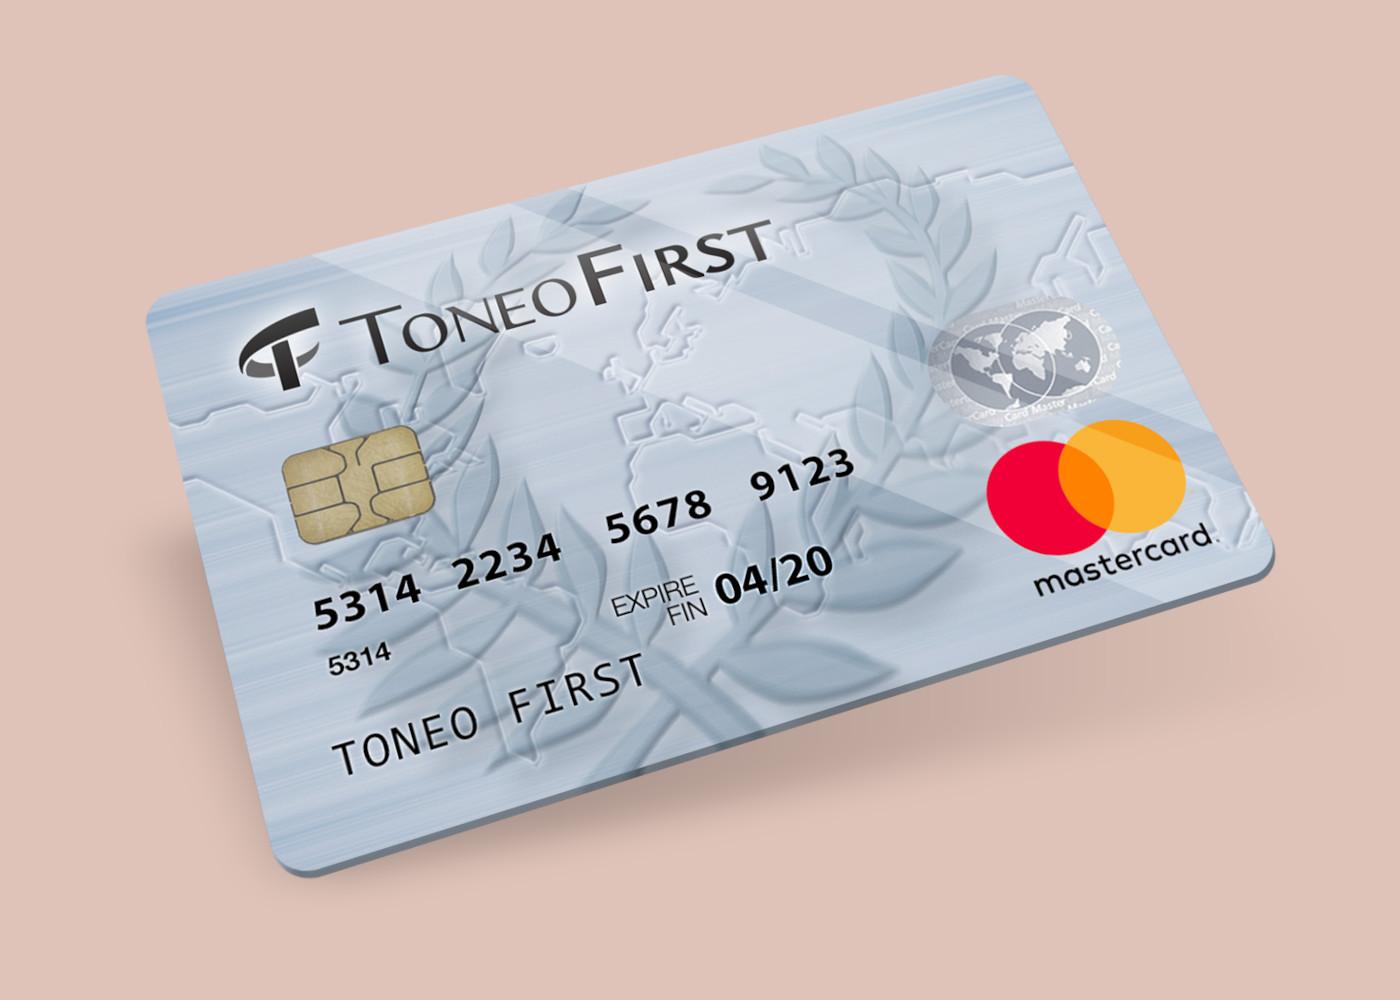 (19.63$) Toneo First Mastercard €15 Gift Card EU